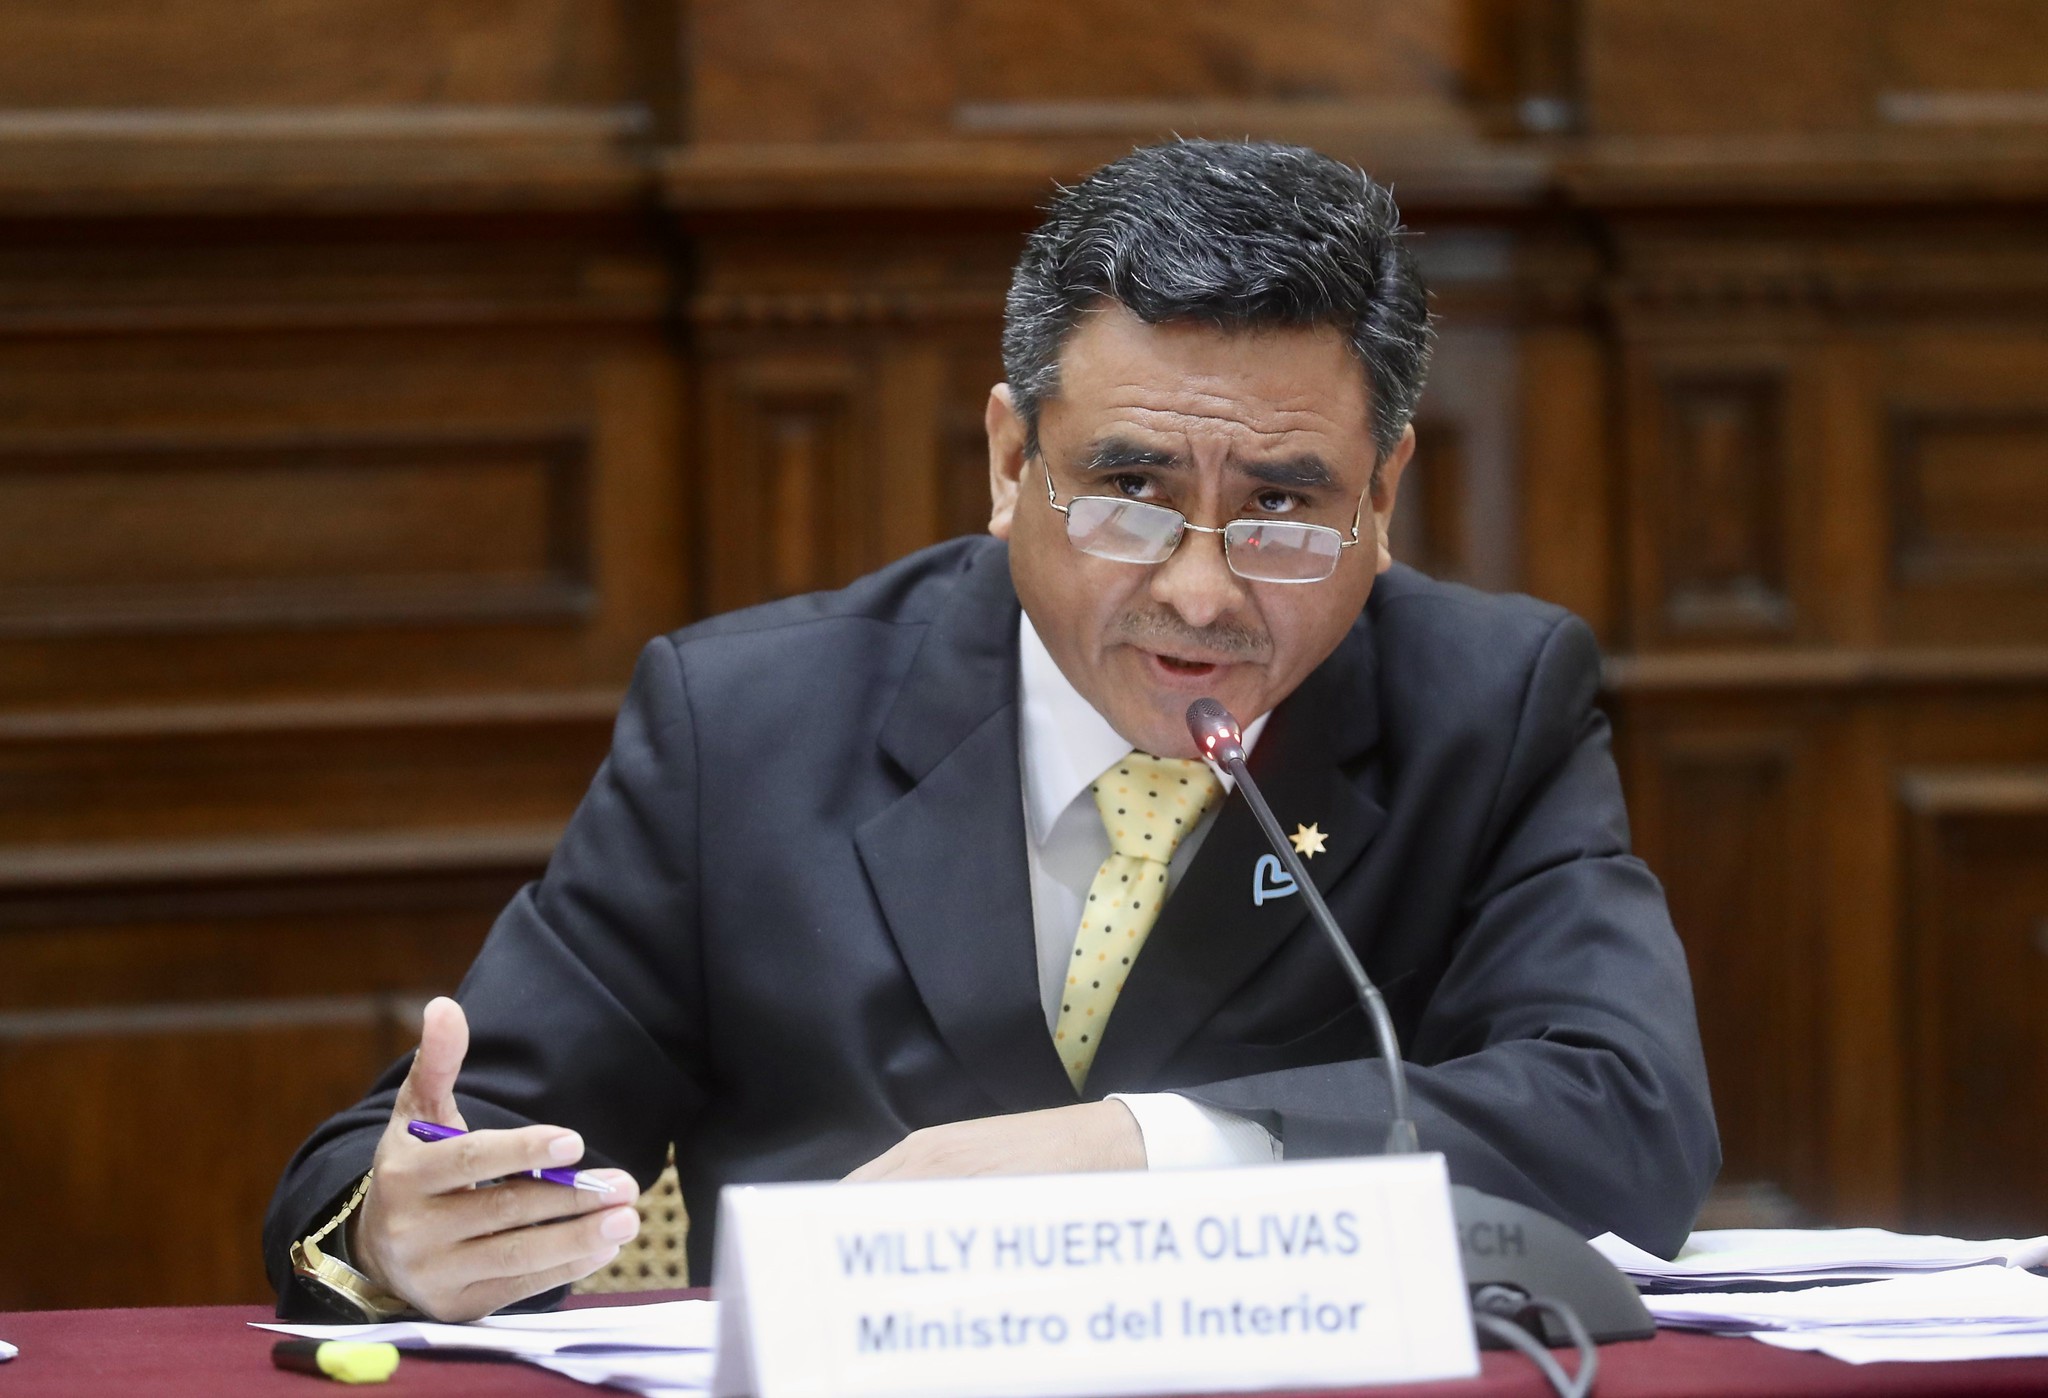 Congreso: Rechazan censura a ministro del Interior Willy Huerta por cambios en la Policía